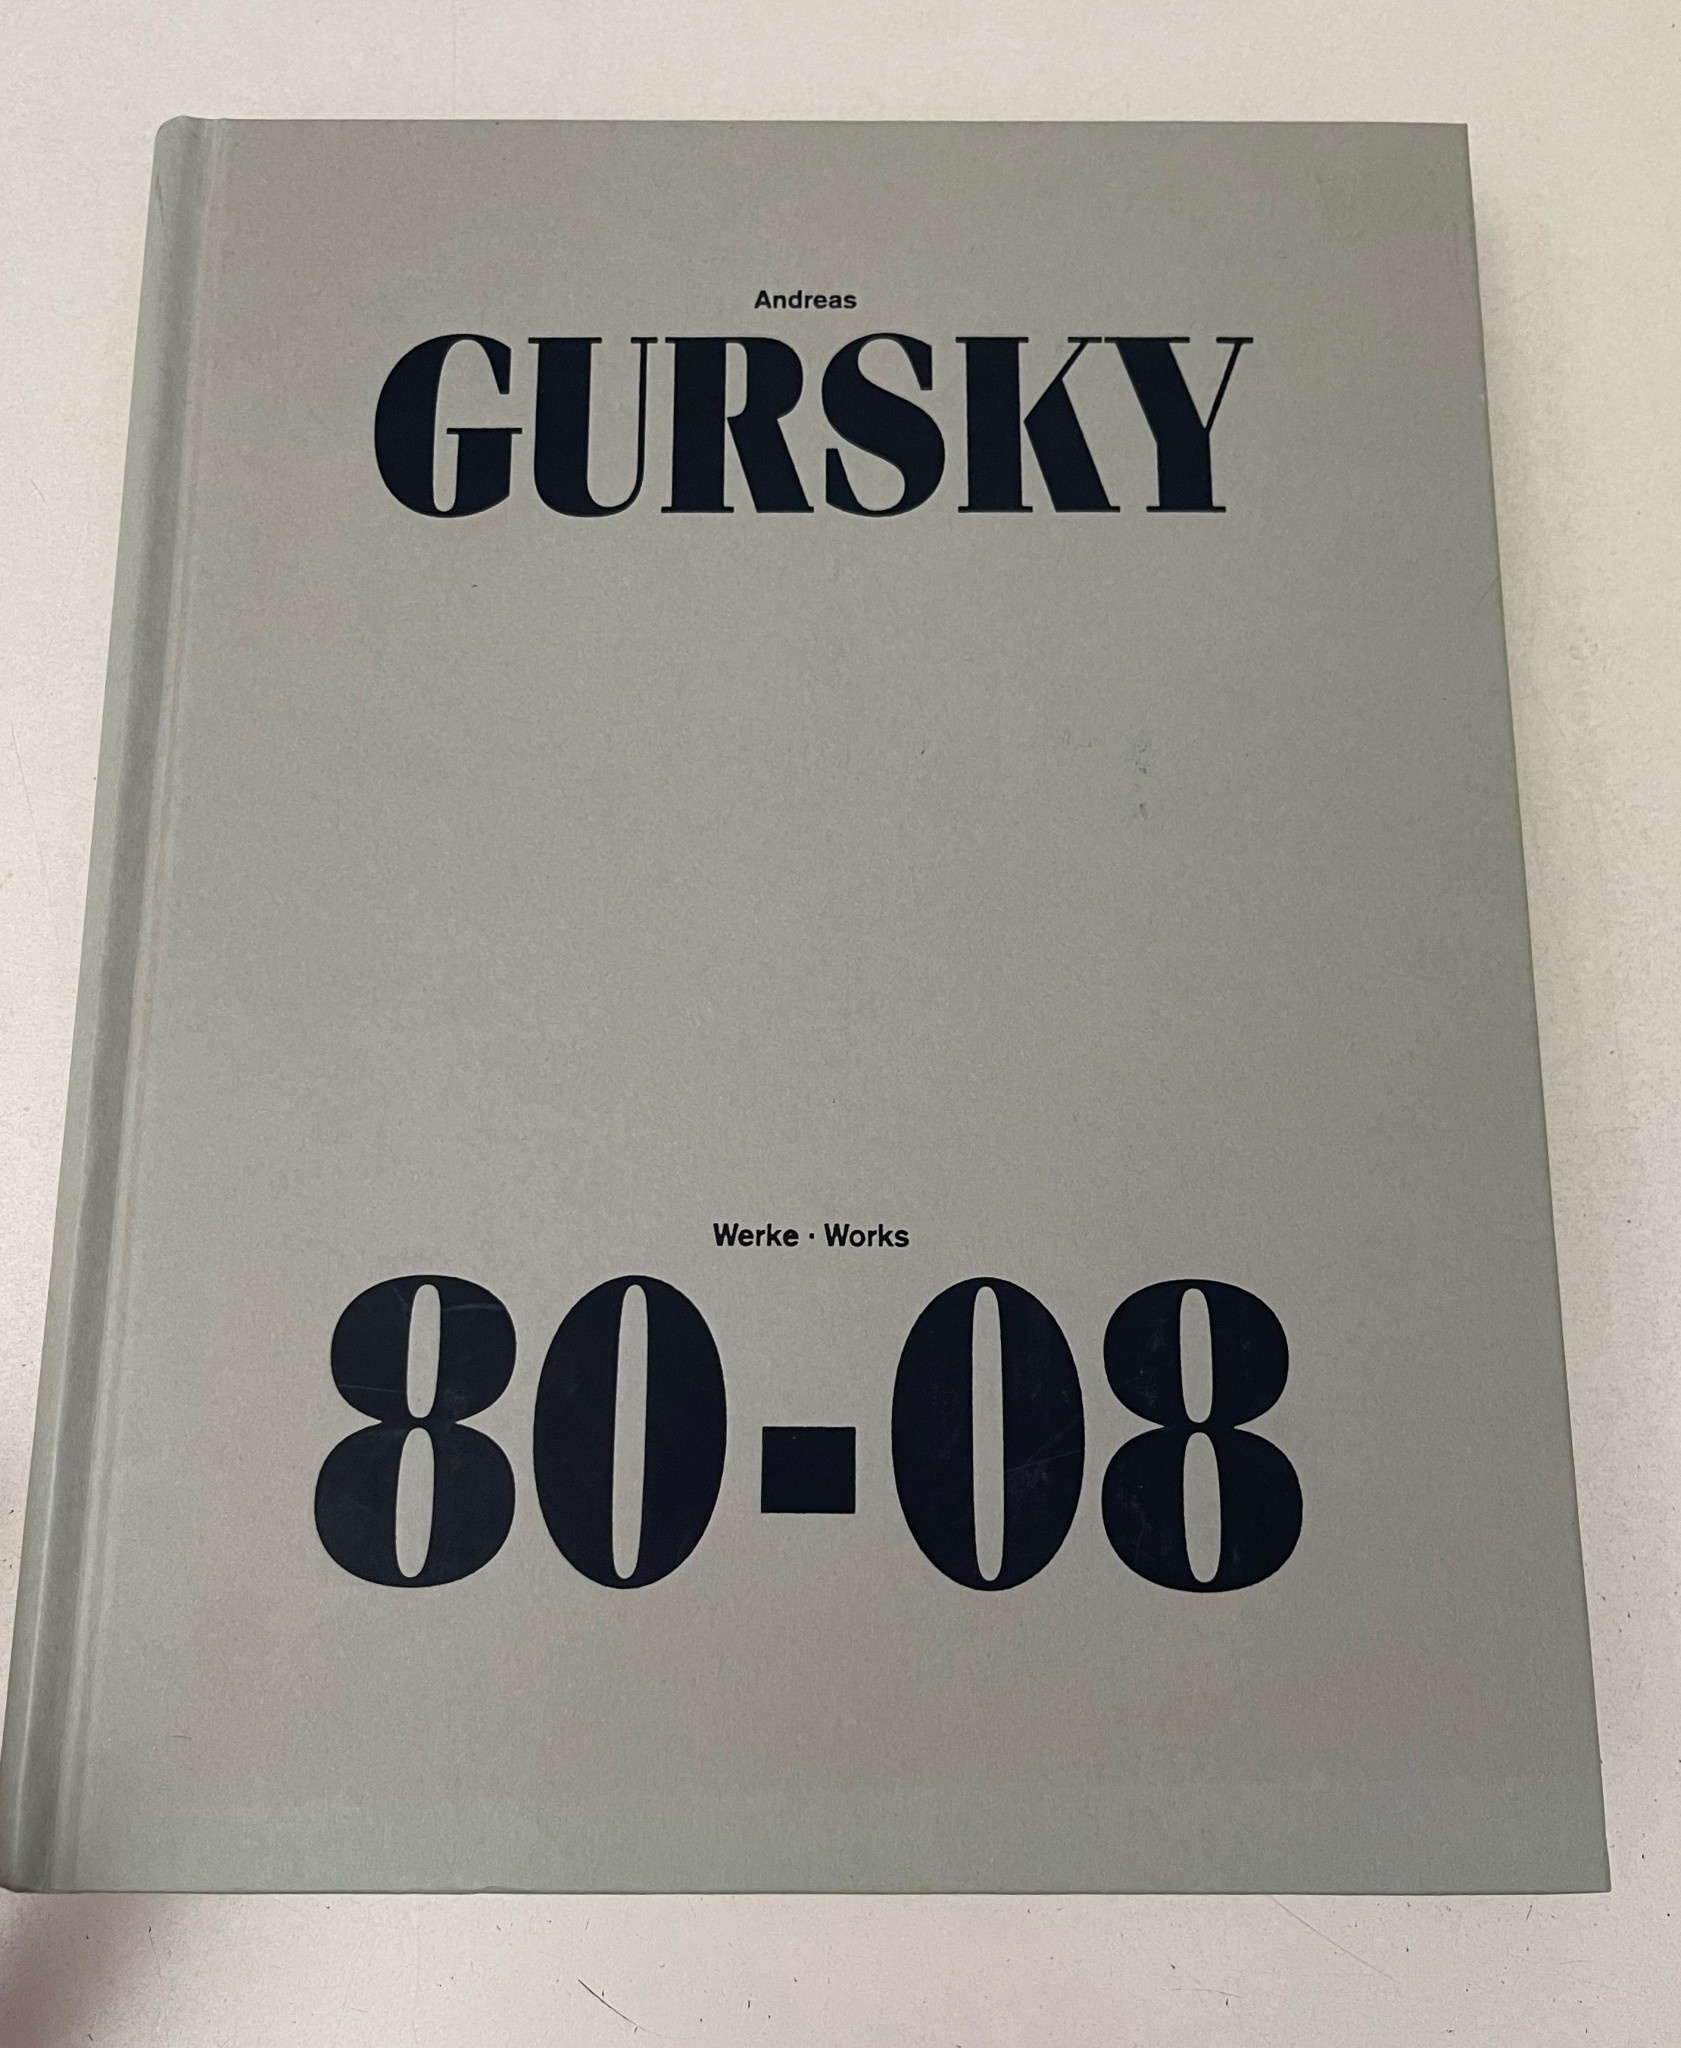 Werke/Works 80-08 - Gursky, Andreas